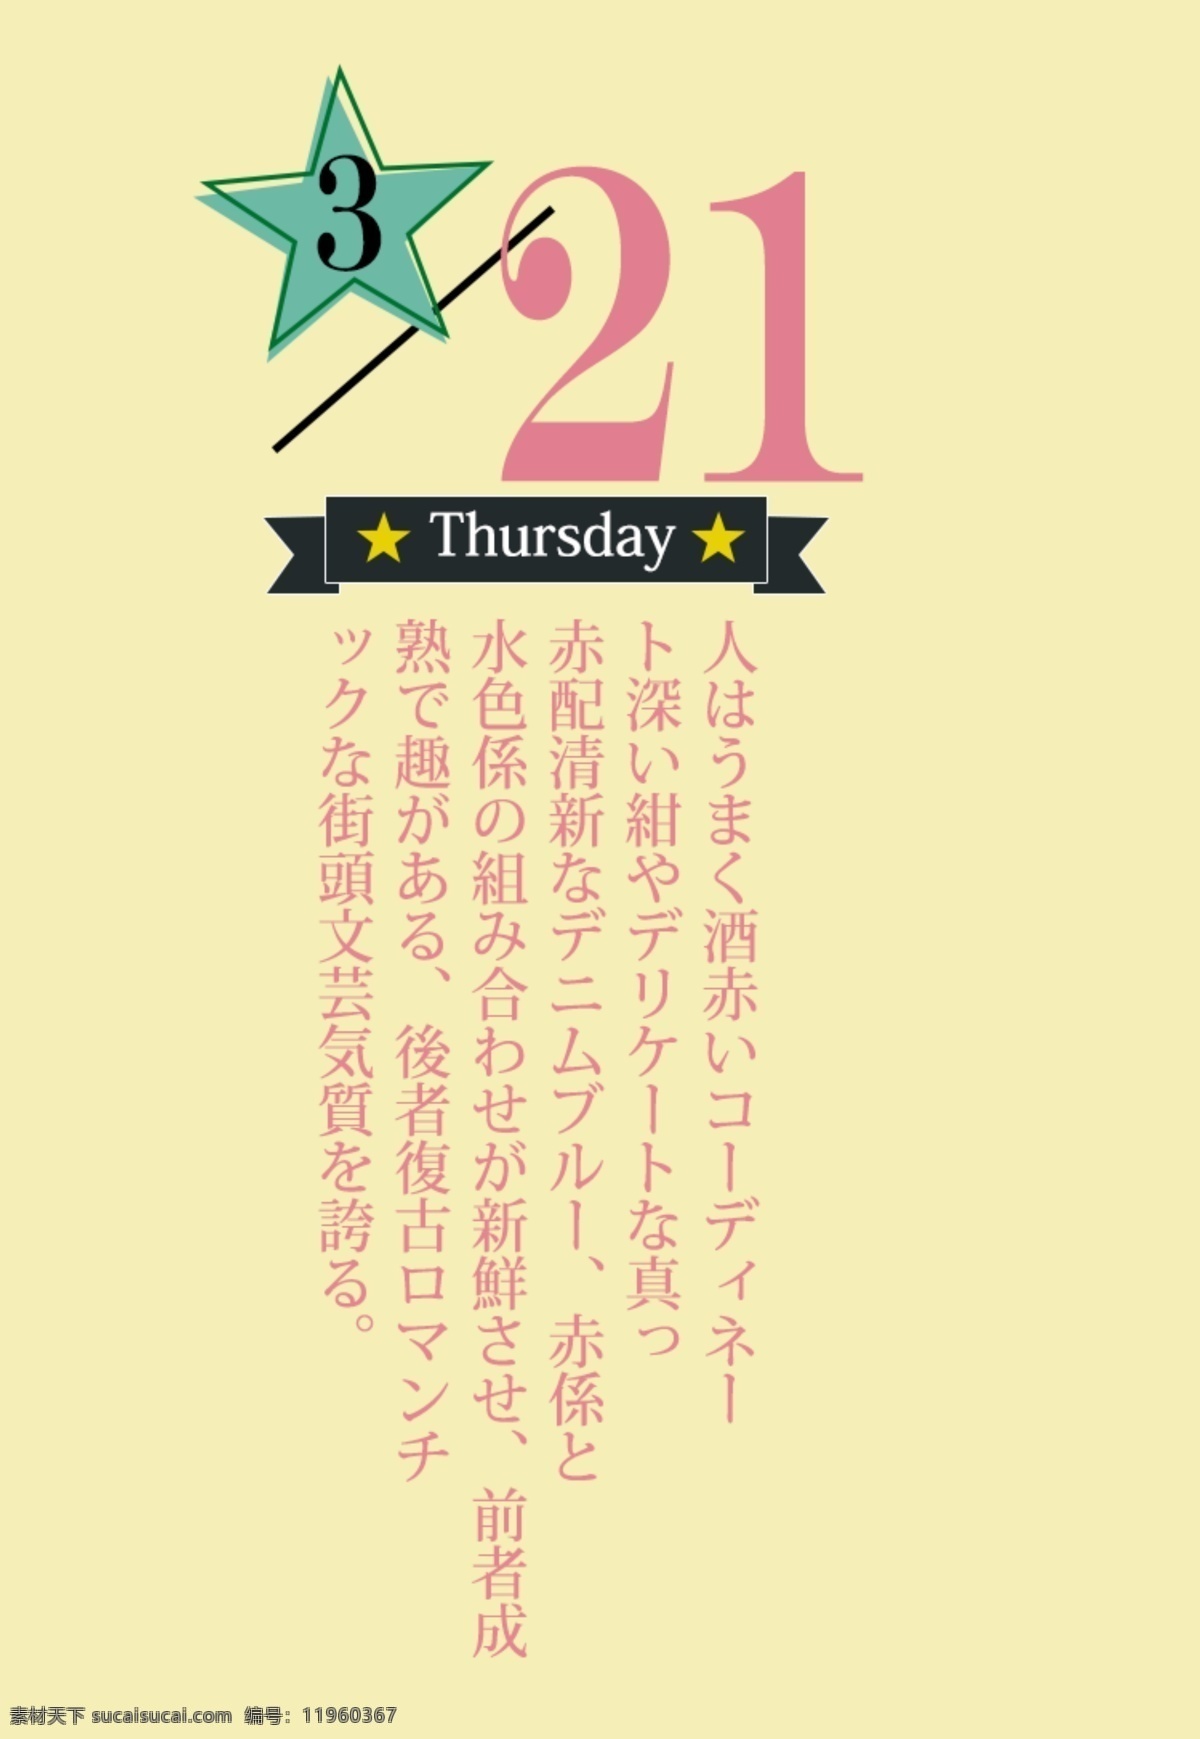 日 系 字体 排版 日文排版 排版样式 日文 文字排版 psd素材 排版设计 日系字体排版 封面排版 日系排版 字体排版 日系字体 字体样式 星星 黄色